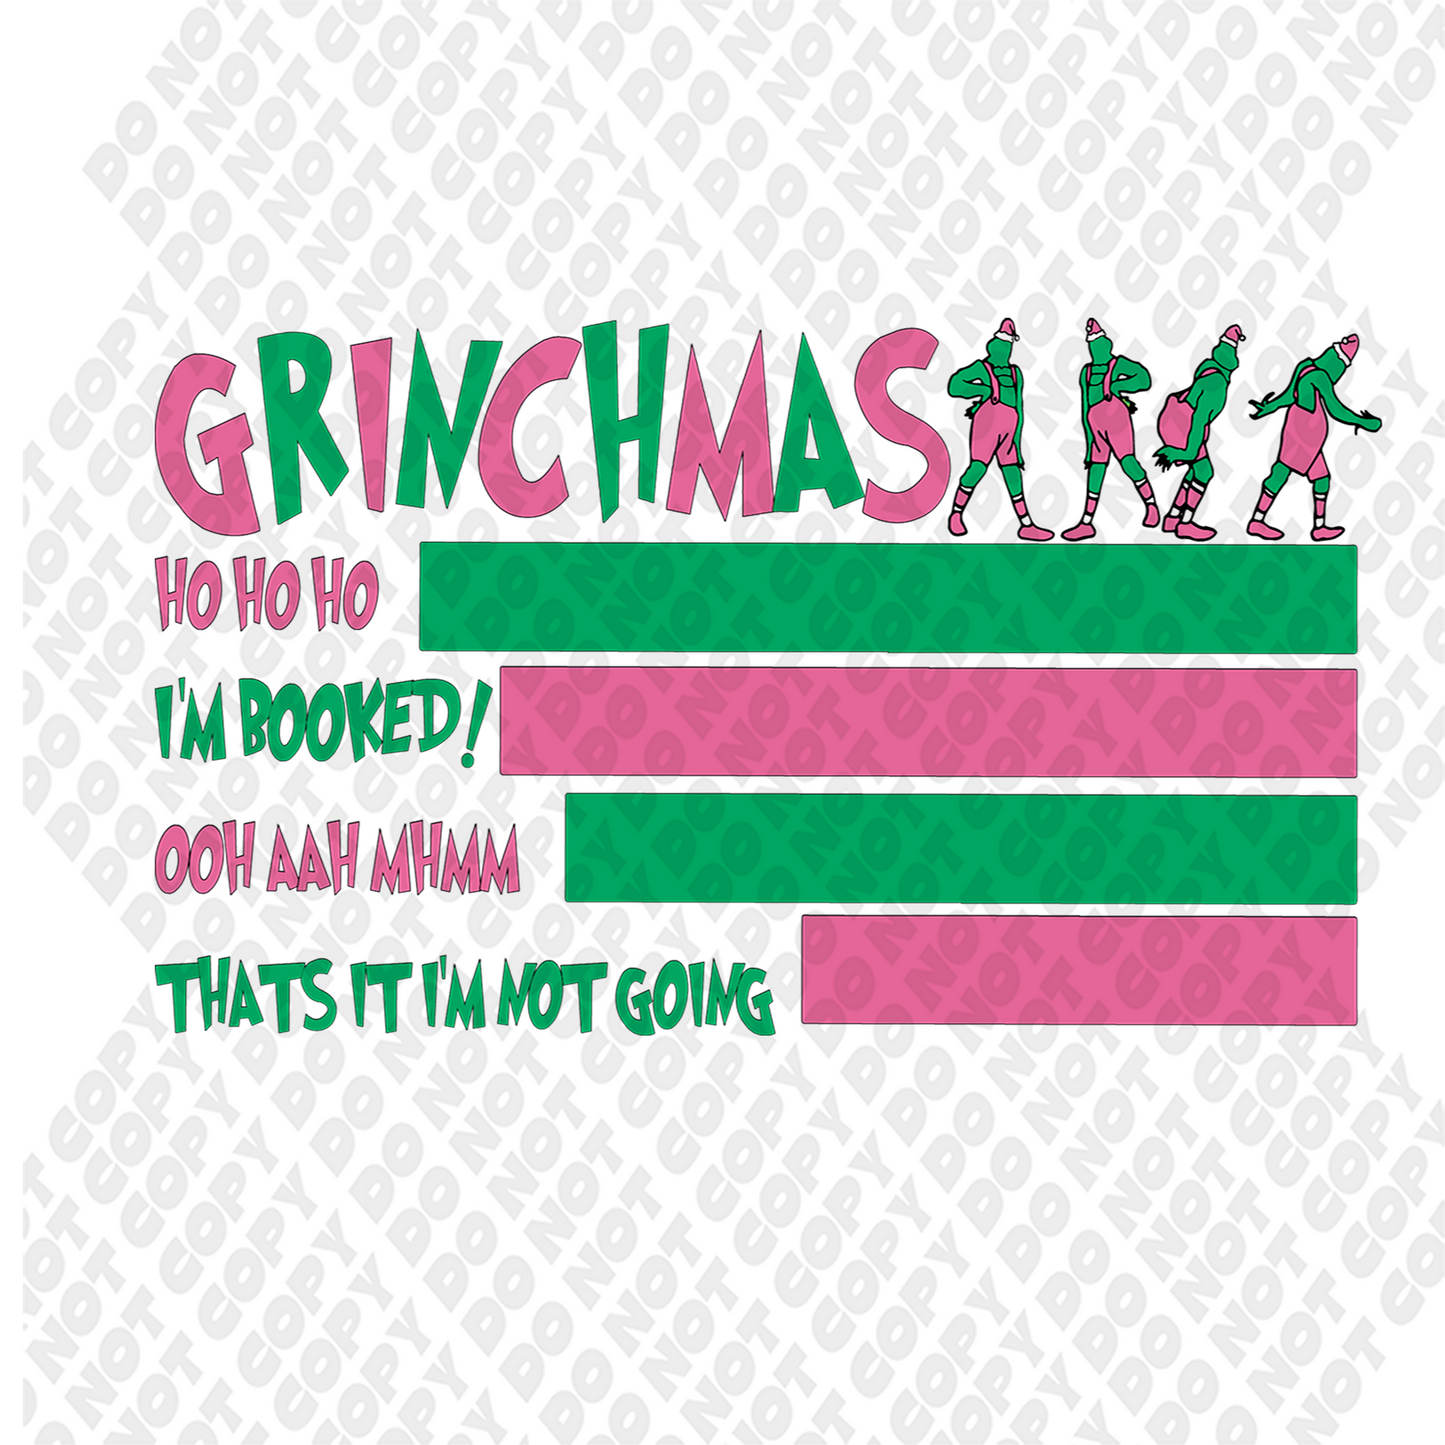 Grinchmas